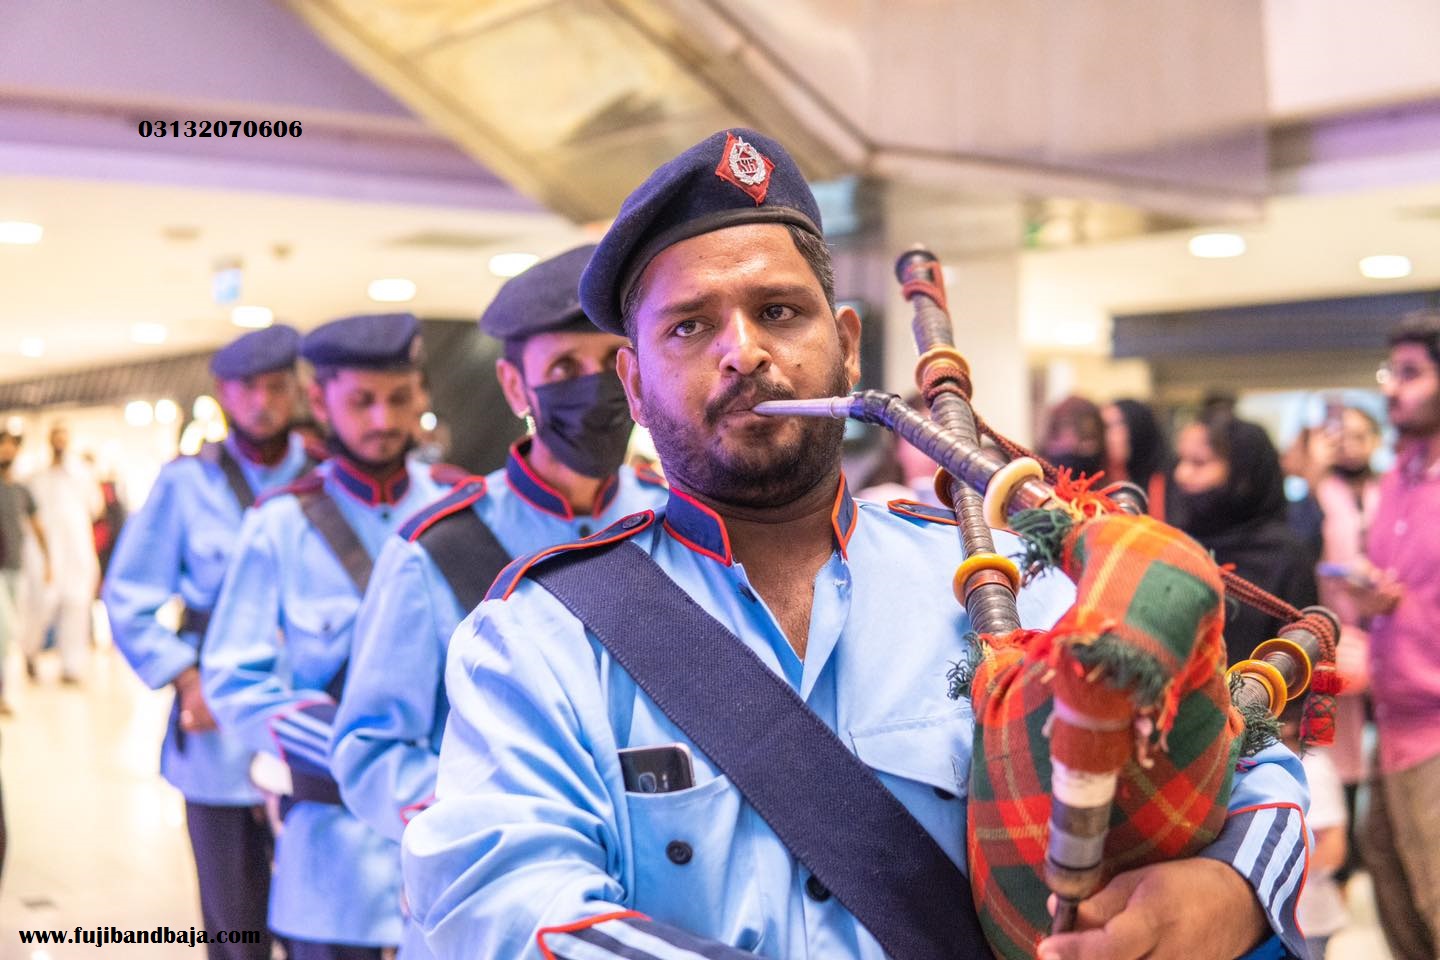 Fuji band. pipe band. band Baja. band service in Karachi. Navy band.